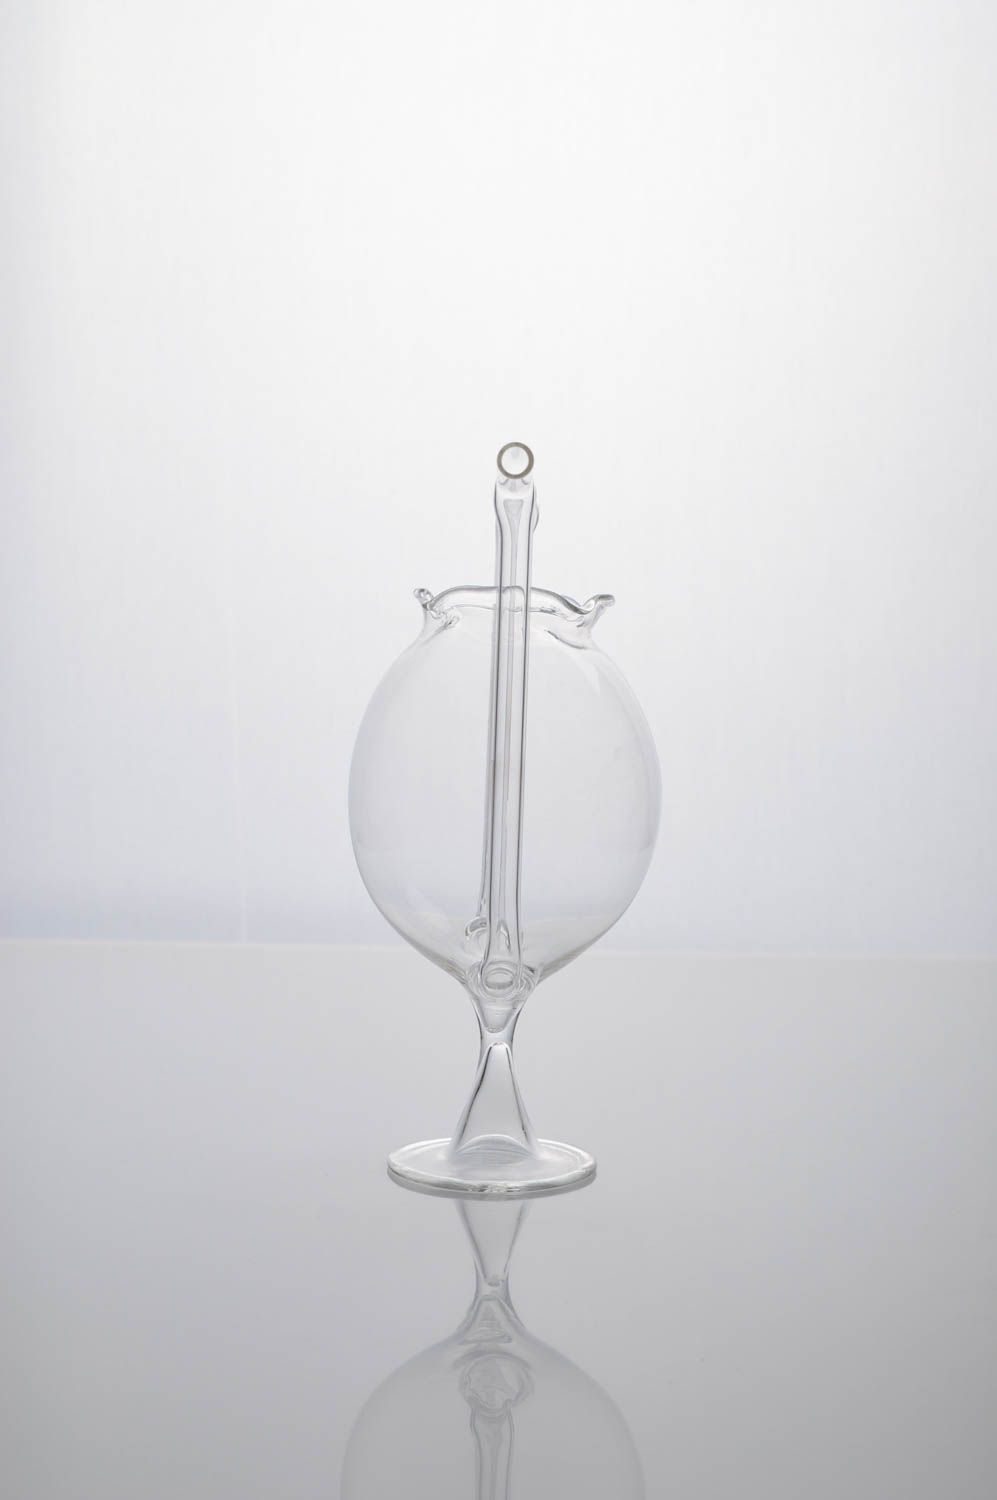 Стеклянный стакан ручной работы оригинальный бокал стакан с трубочками для пары фото 4